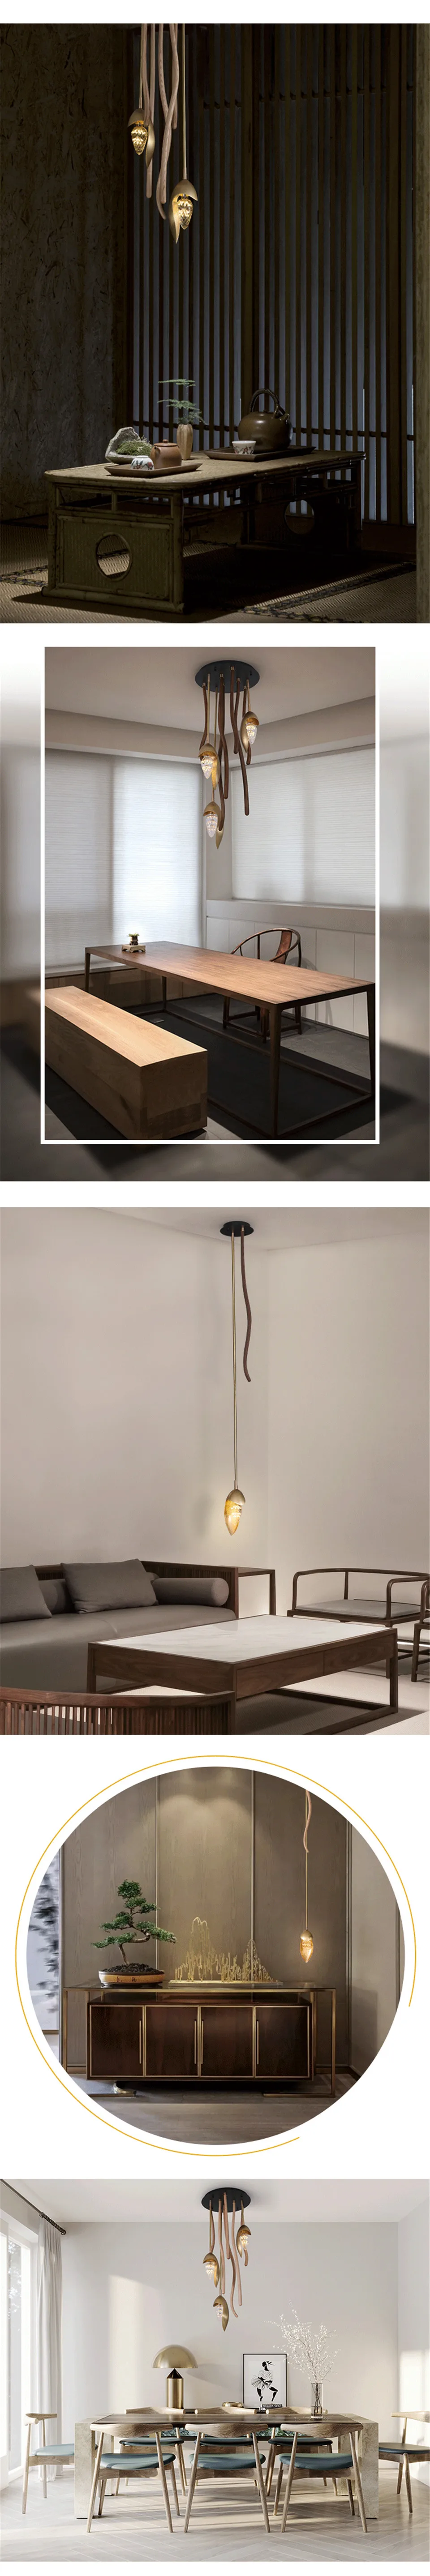 Китайский стиль Медные подвесные светильники деревянный подвесной светильник простой подвесной светильник гостиная спальня столовая подвесные светильники для отеля